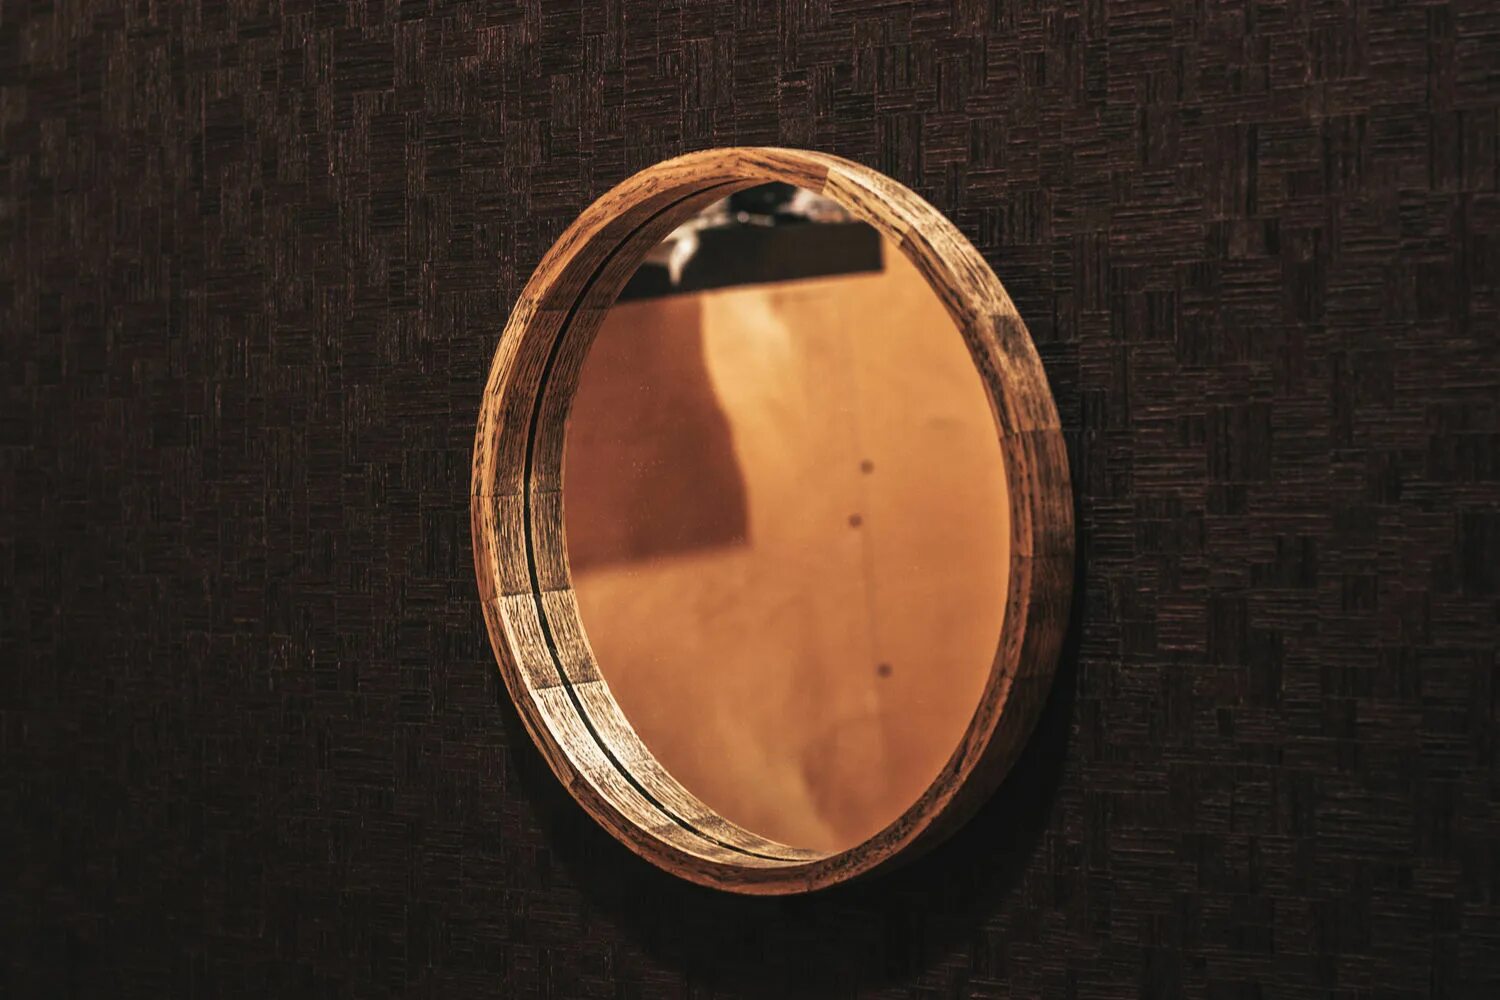 Круглое зеркало икеа в деревянной раме. Зеркало икеа круглое. Зеркало в деревянной раме икеа. Зеркало в деревянной раме 173х93см, дерево 18-2703. Зеркало дерево купить